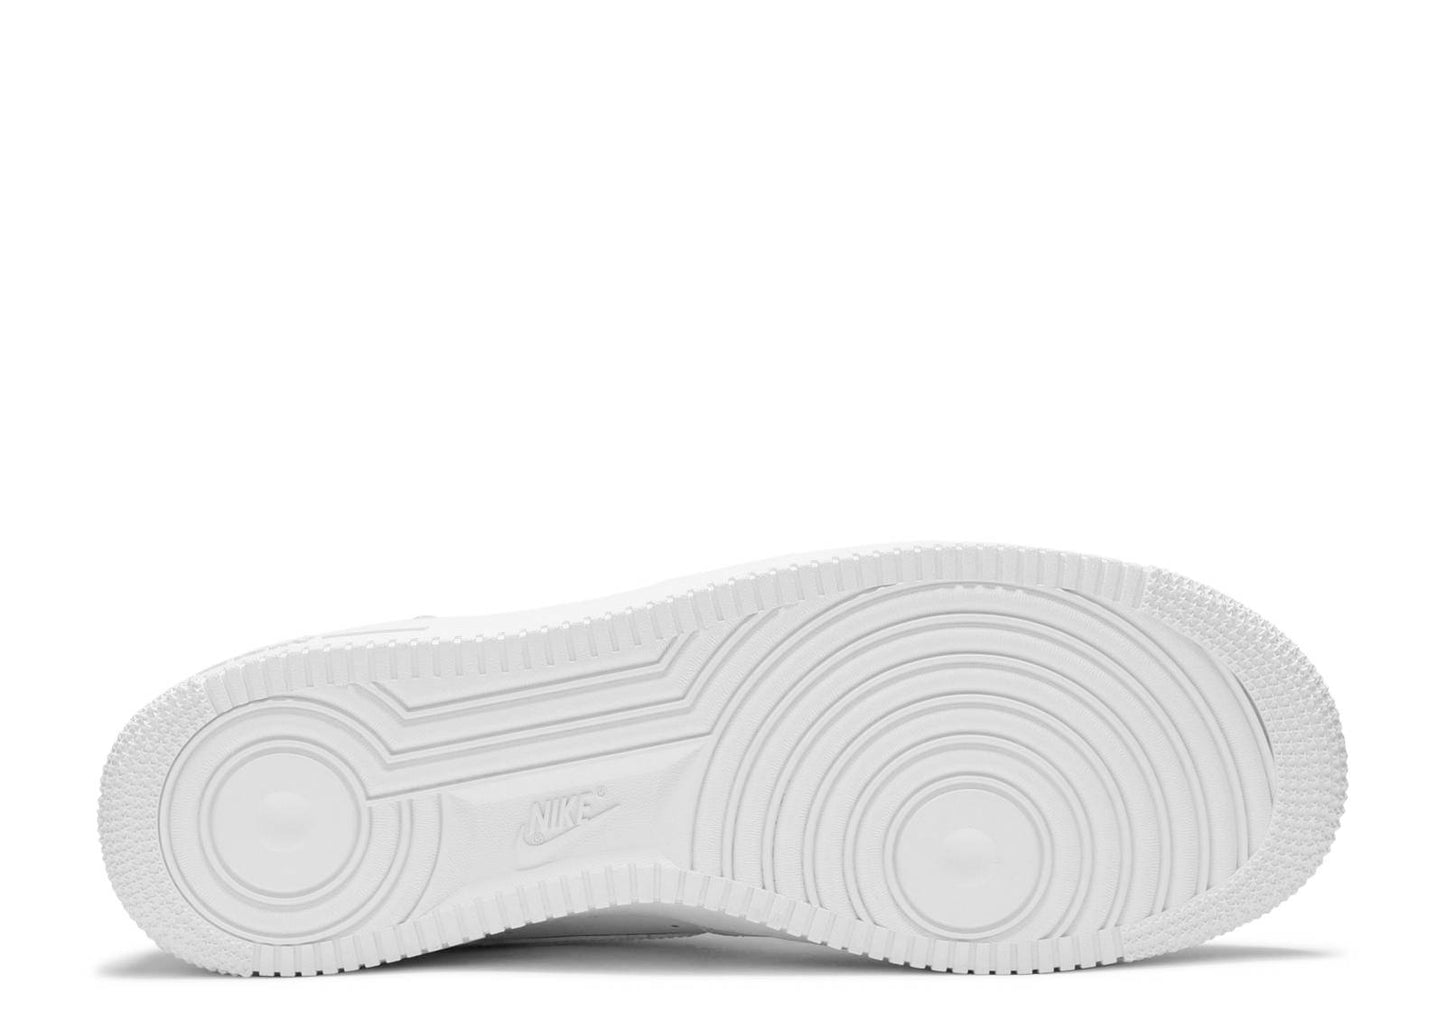 Supreme x Nike Air Force 1 Low "Box Logo - White"